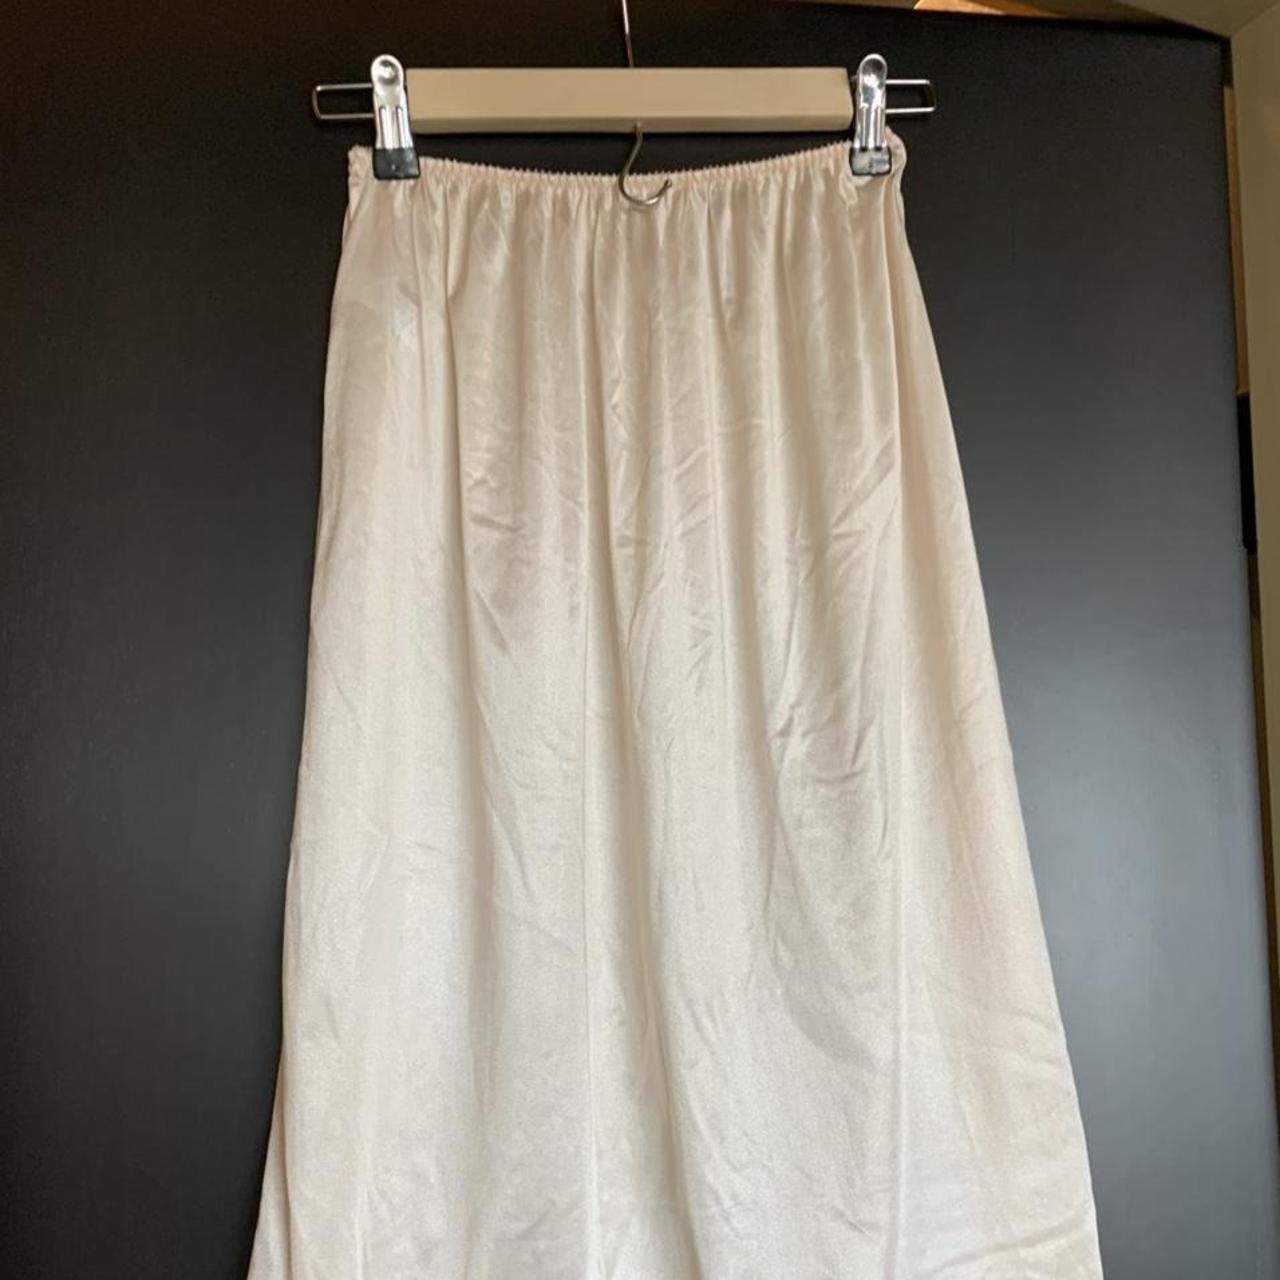 Product Image 2 - slip skirt! this slip skirt